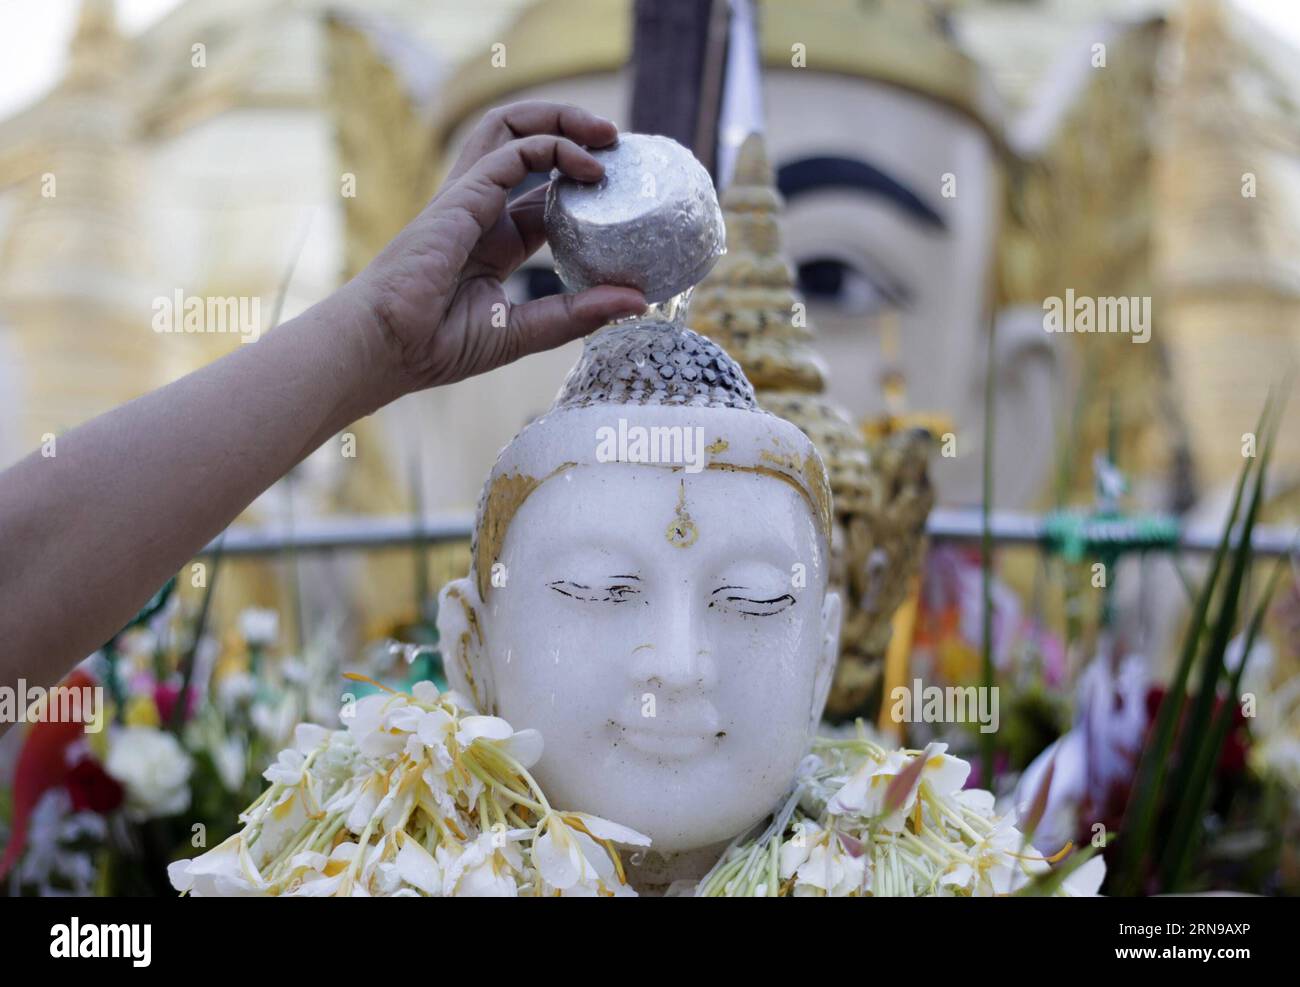 Ein Gläubiger gießt Wasser über eine Buddha-Statue auf Myanmars traditionellem Tazaungdaing-Festival in der Shwedagon-Pagode in Yangon, Myanmar, 26. November 2015. Das Tazaungdaing Festival, auch bekannt als das Festival der Lichter, das im achten Monat des traditionellen myanmarischen Kalenders auf den Vollmondtag fällt, wird als Nationalfeiertag in Myanmar gefeiert und markiert das Ende der Regenzeit. ) MYANMAR-YANGON-TAZAUNGDAING FESTIVAL UxAung PUBLICATIONxNOTxINxCHN ein Devotee gießt Wasser über eine Buddha-Statue AUF DEM traditionellen myanmarischen Tazaungdaing-Festival in der Shwedagon-Pagode in Yangon Myanmar, November 26 Stockfoto